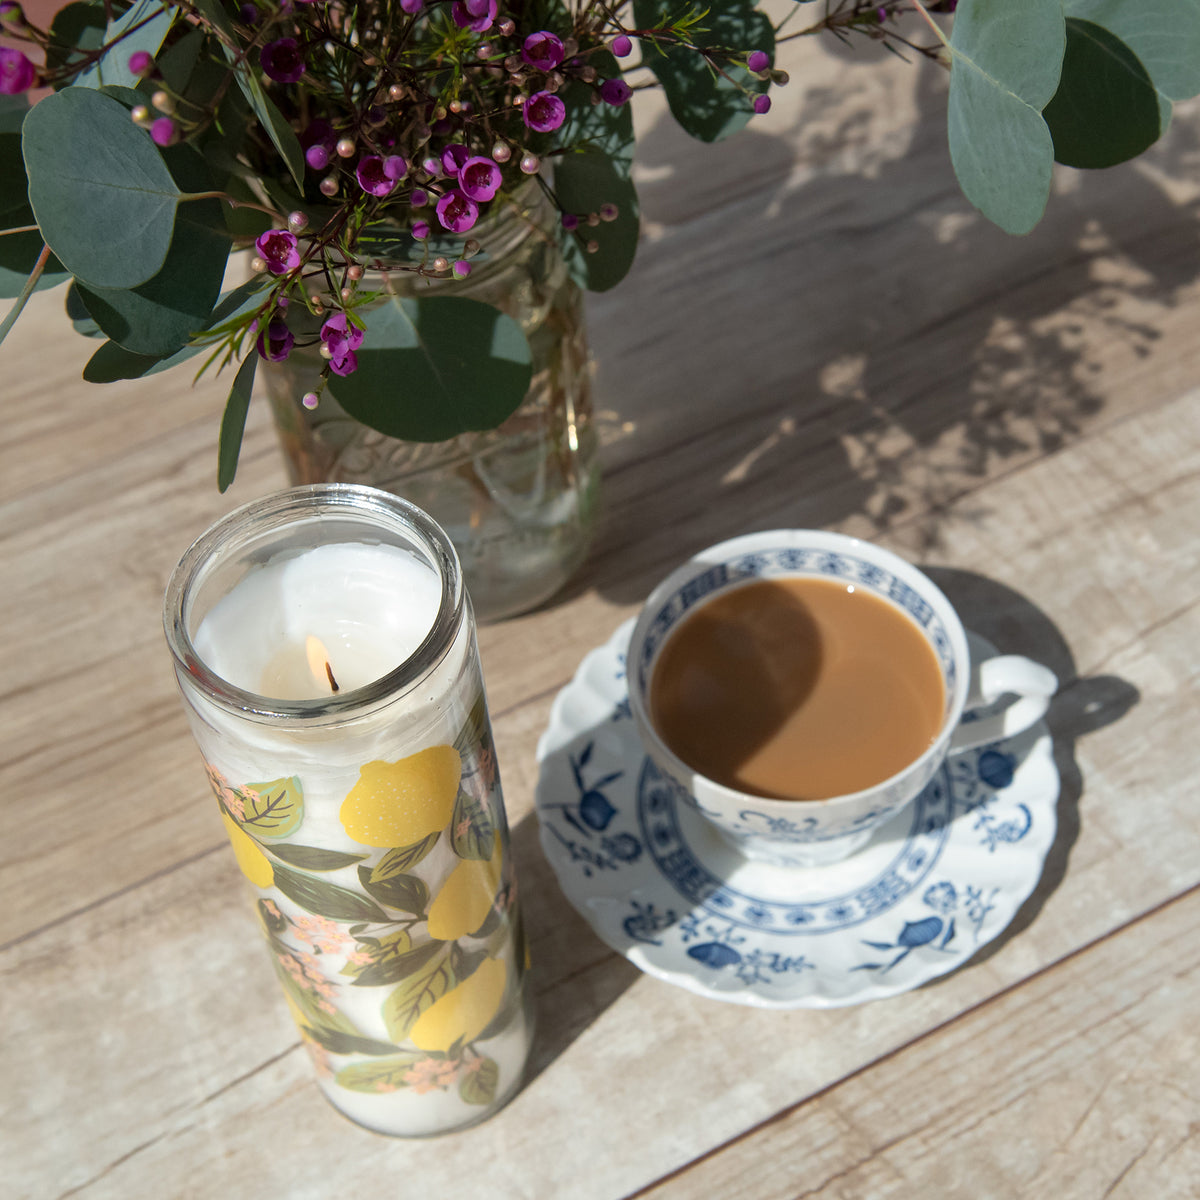 Set 6 Espresso Cups & Saucers Lemon Flowers